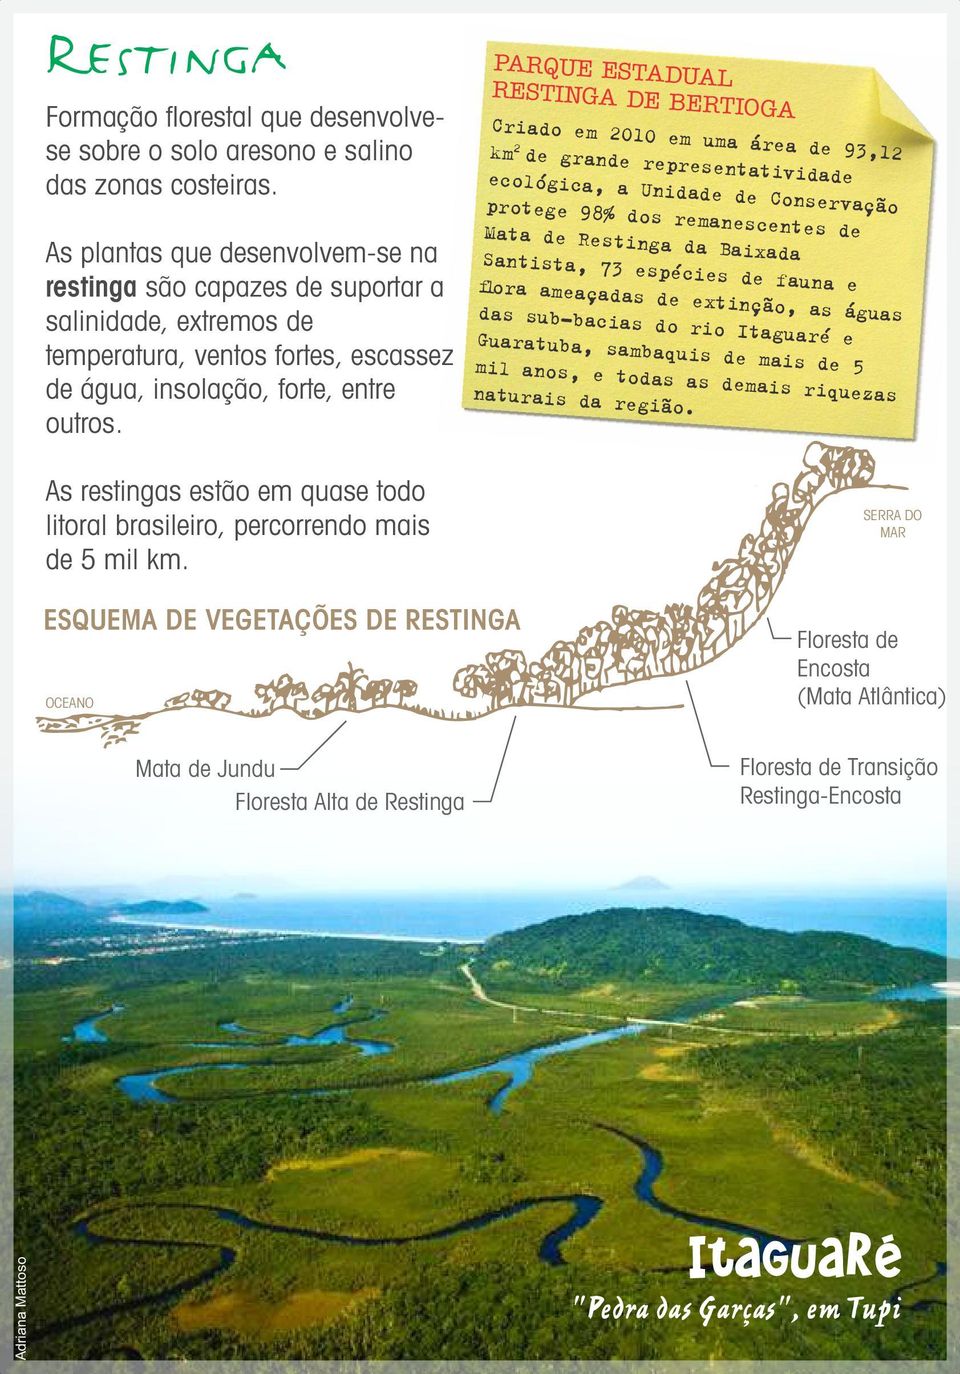 PARQUE ESTADUAL RESTINGA DE BERTIOGA Criado em 2010 em uma área de 93,12 2 km de grande representatividade ecológica, a Unidade de Conservação protege 98% dos remanescentes de Mata de Restinga da